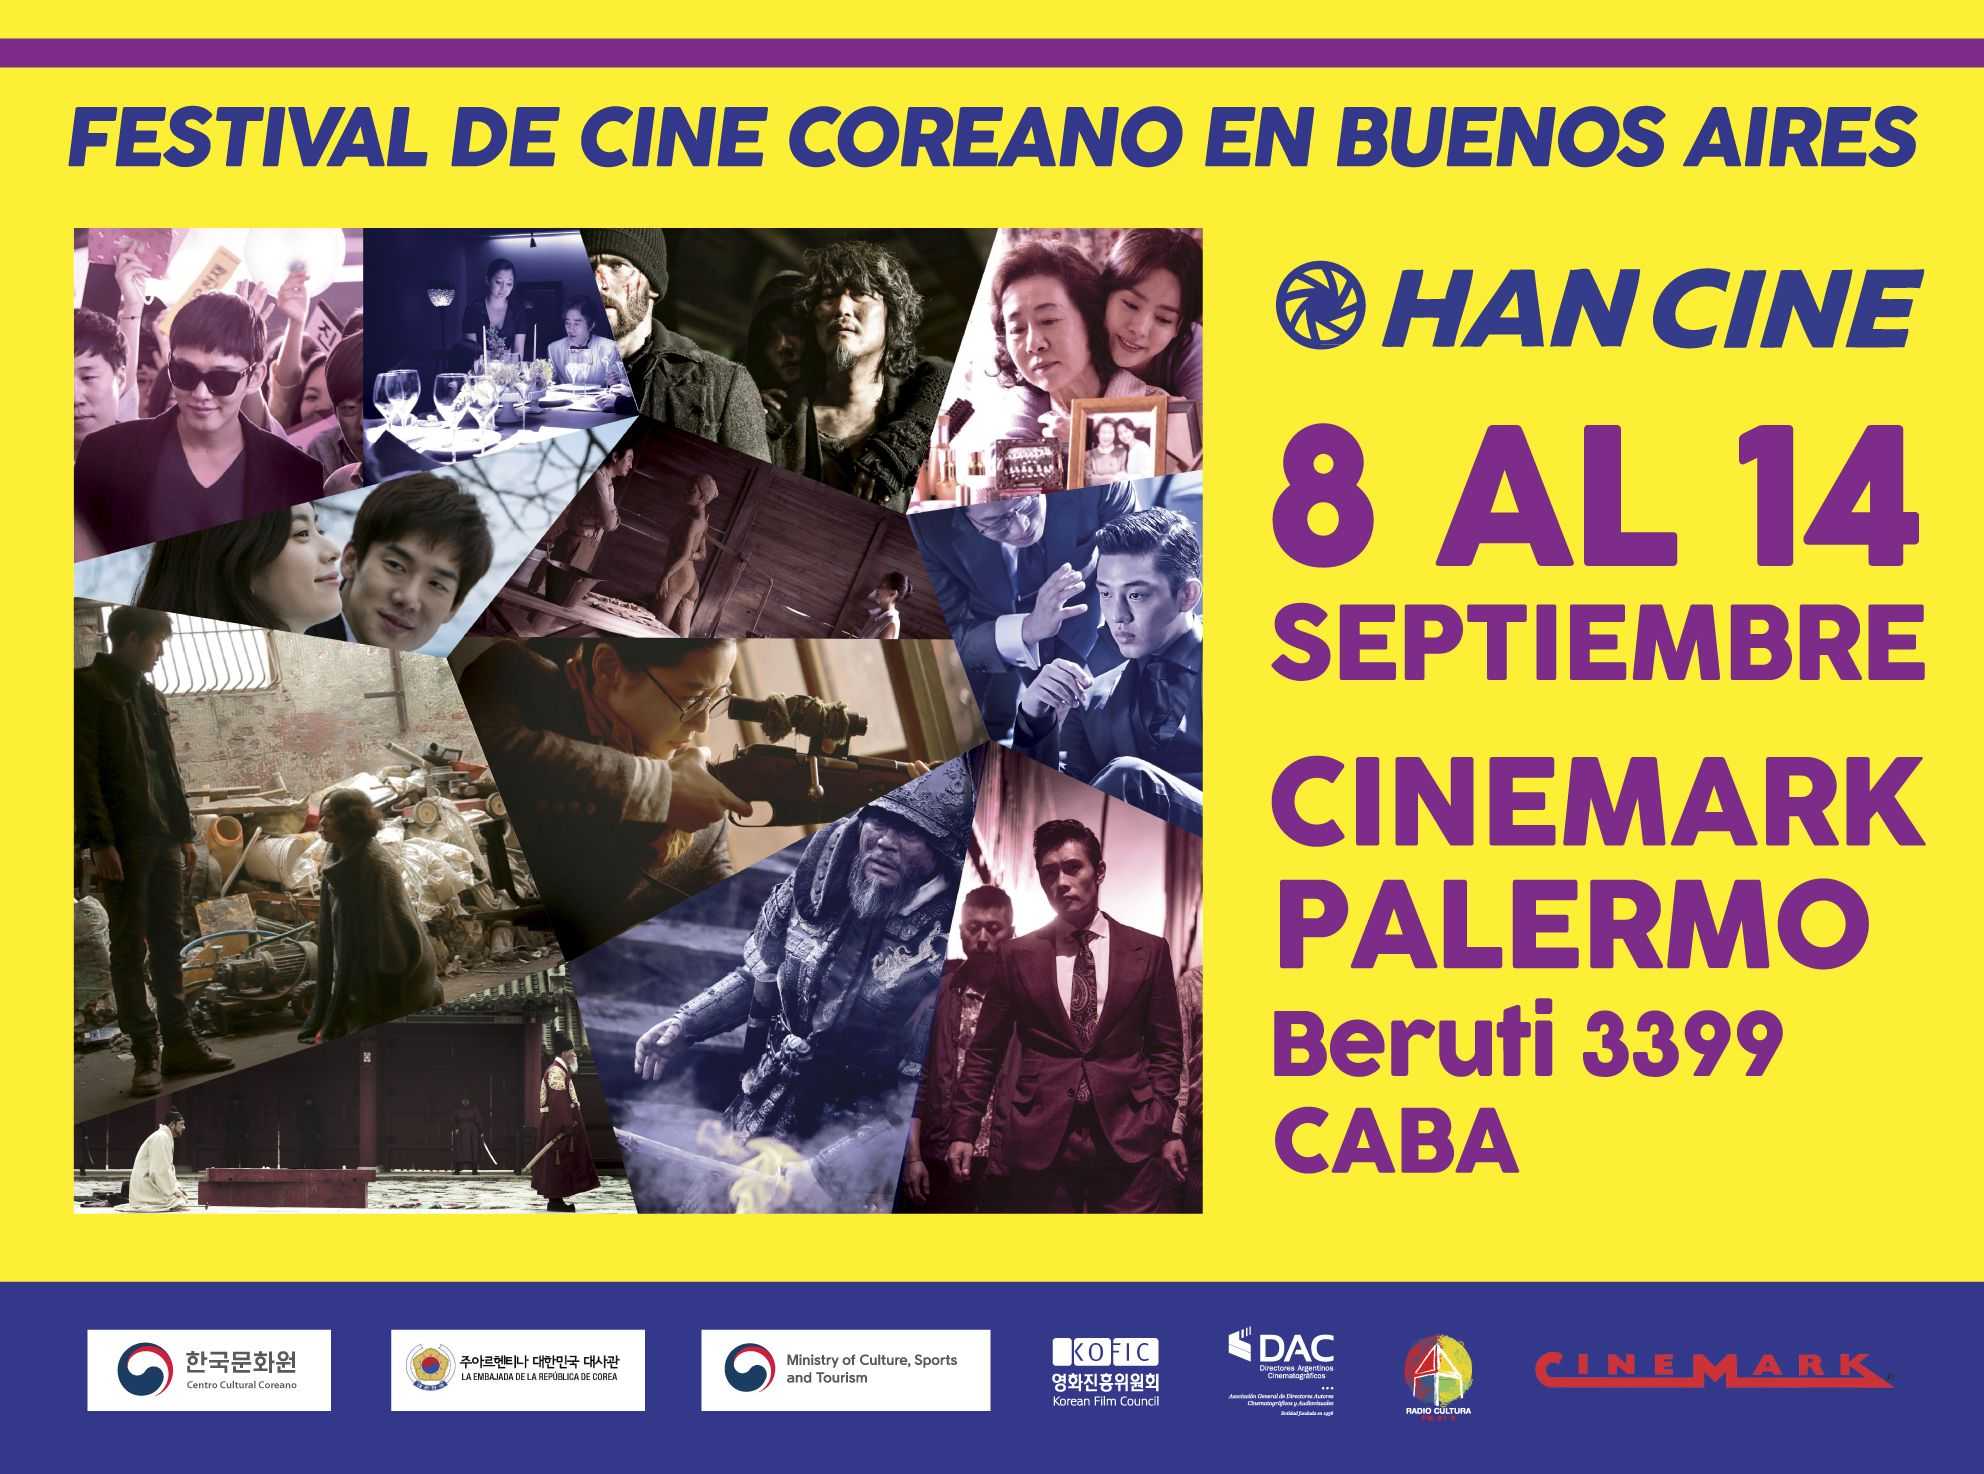 Han Cine, el Festival de Cine Coreano en Buenos Aires